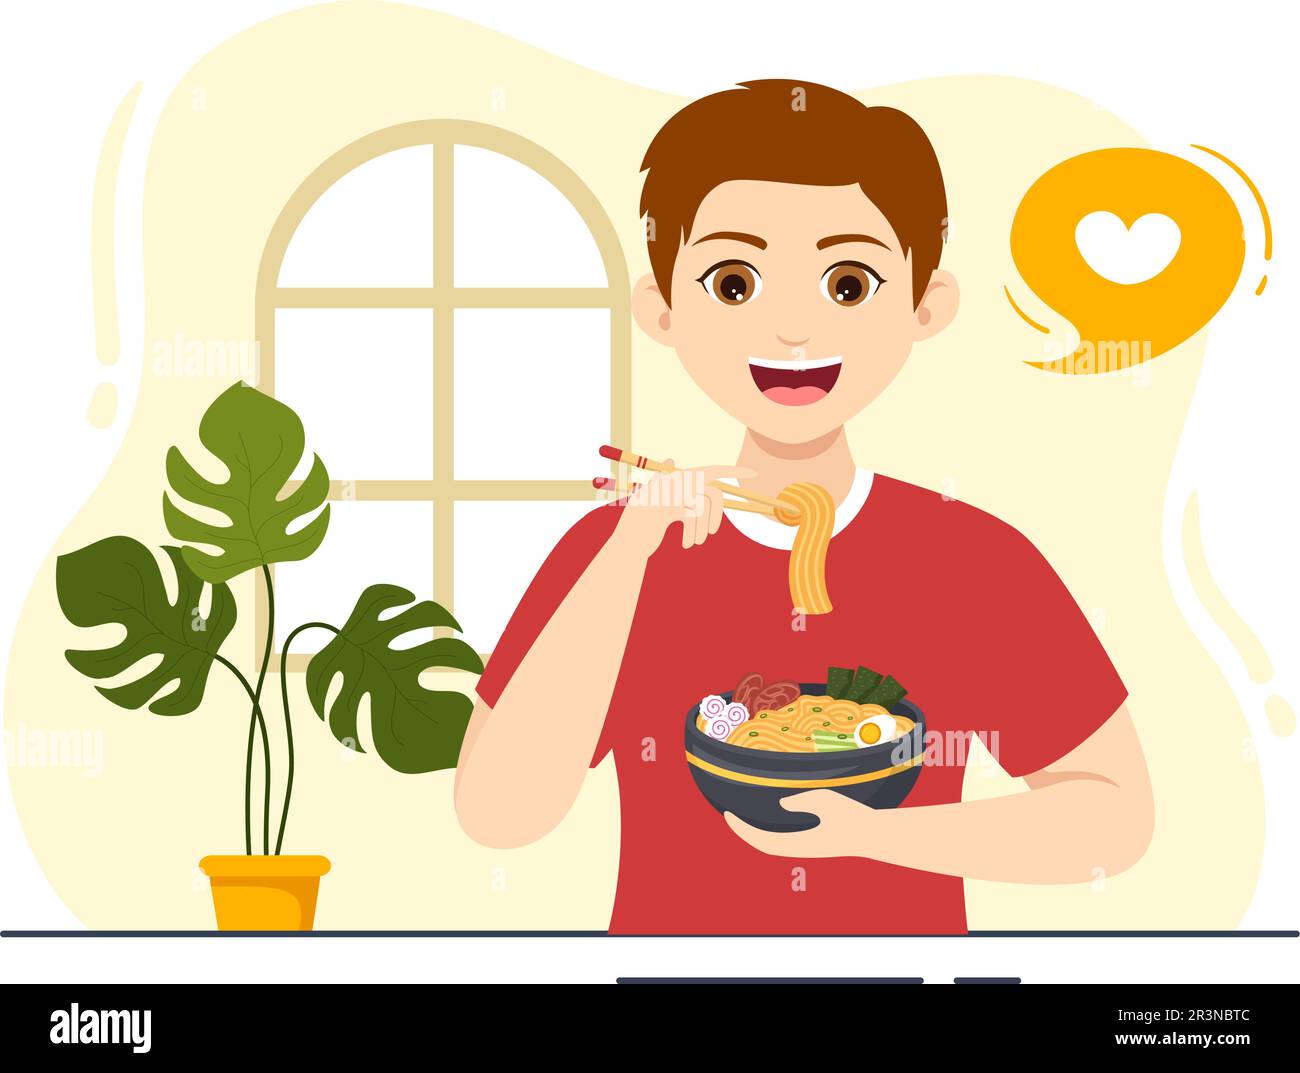 Schéma de ramen Illustration de la nourriture japonaise avec Noodle, Chopsticks, soupe miso, Nori bouillie aux œufs et grillé dans des modèles dessinés à la main Illustration de Vecteur